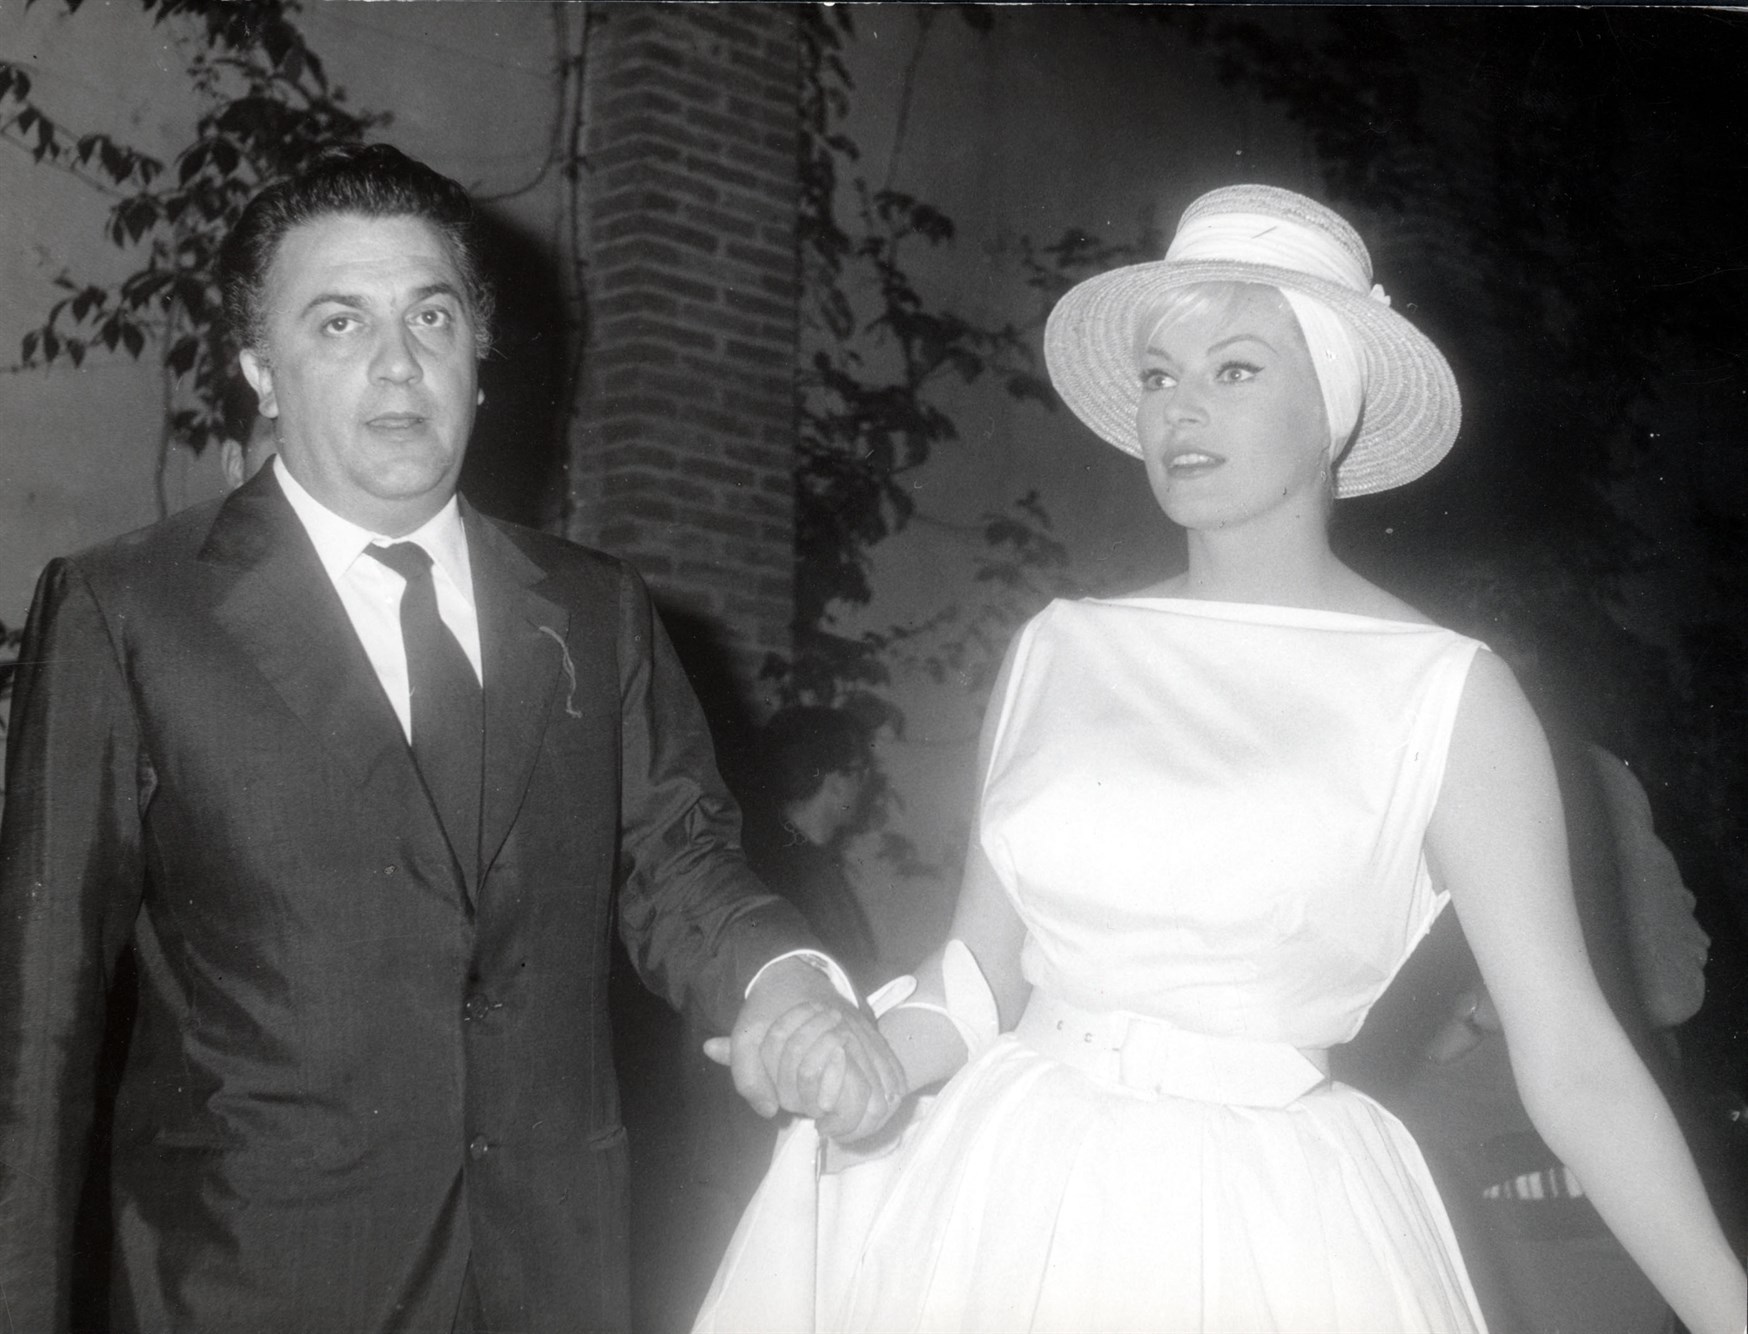 Federico Fellini and Anita Ekberg